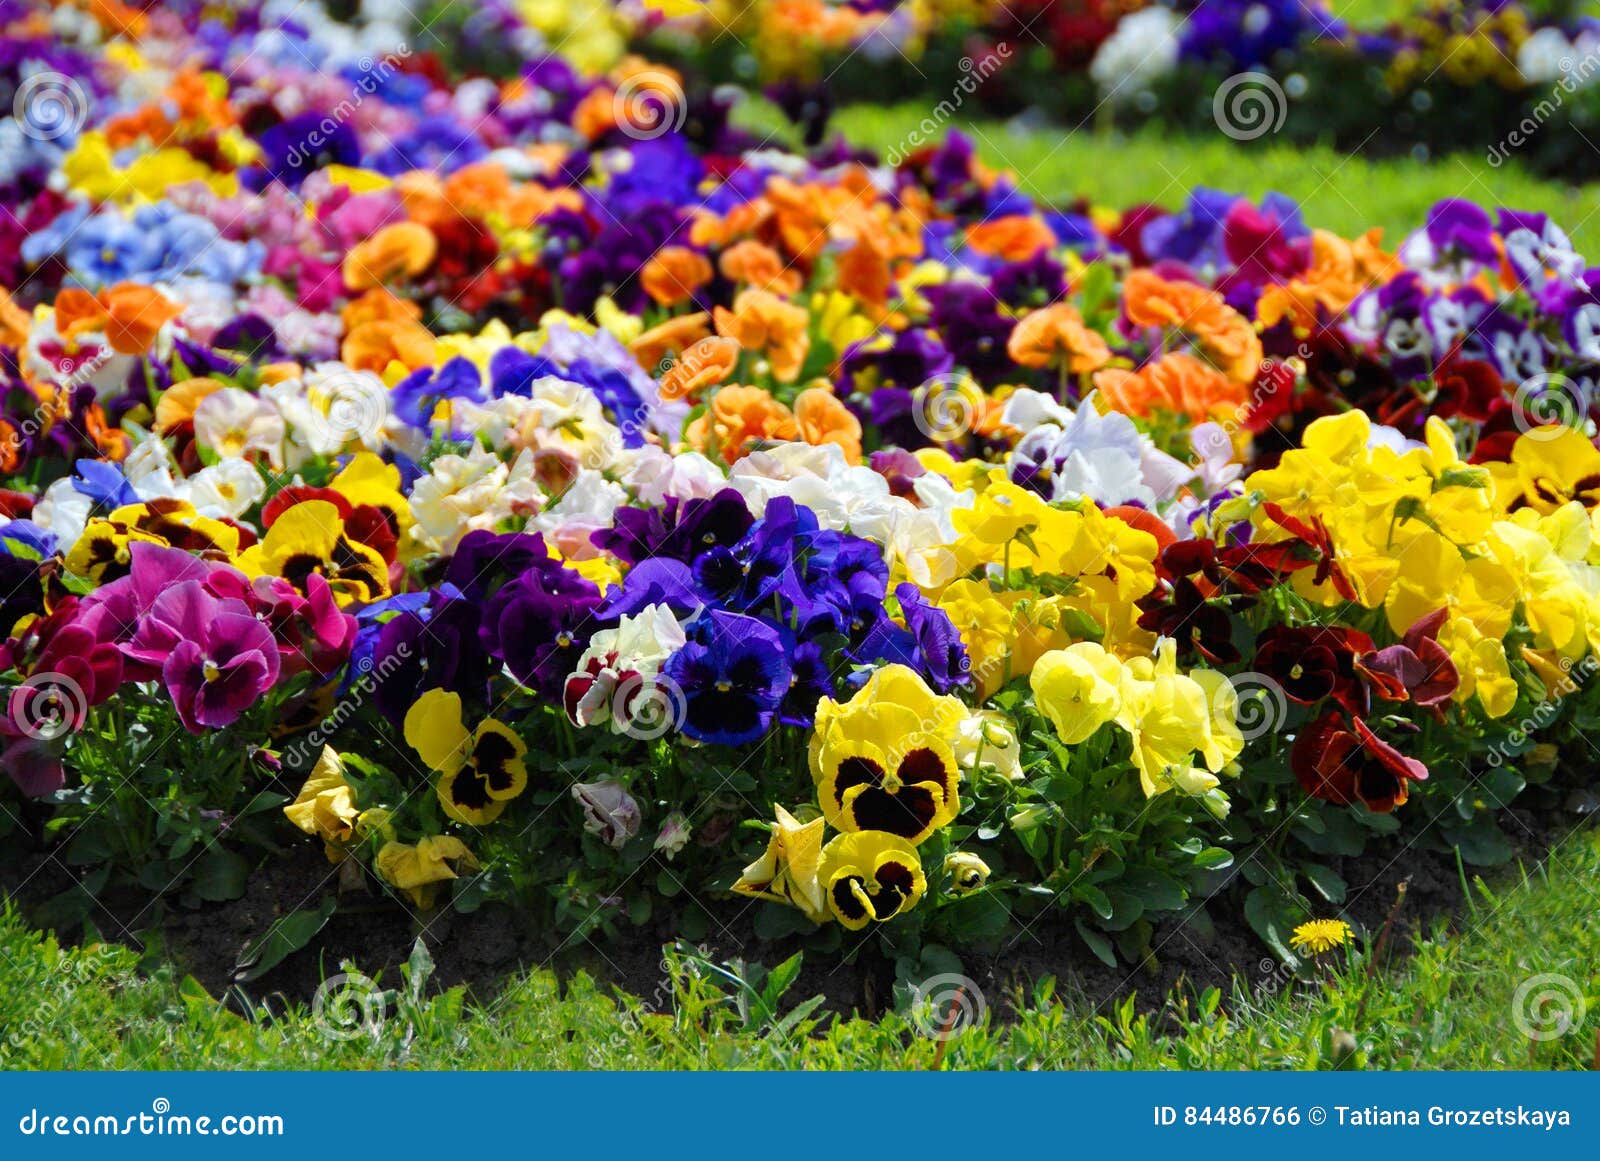 heartsease, flower garden - close-up, flowerbed